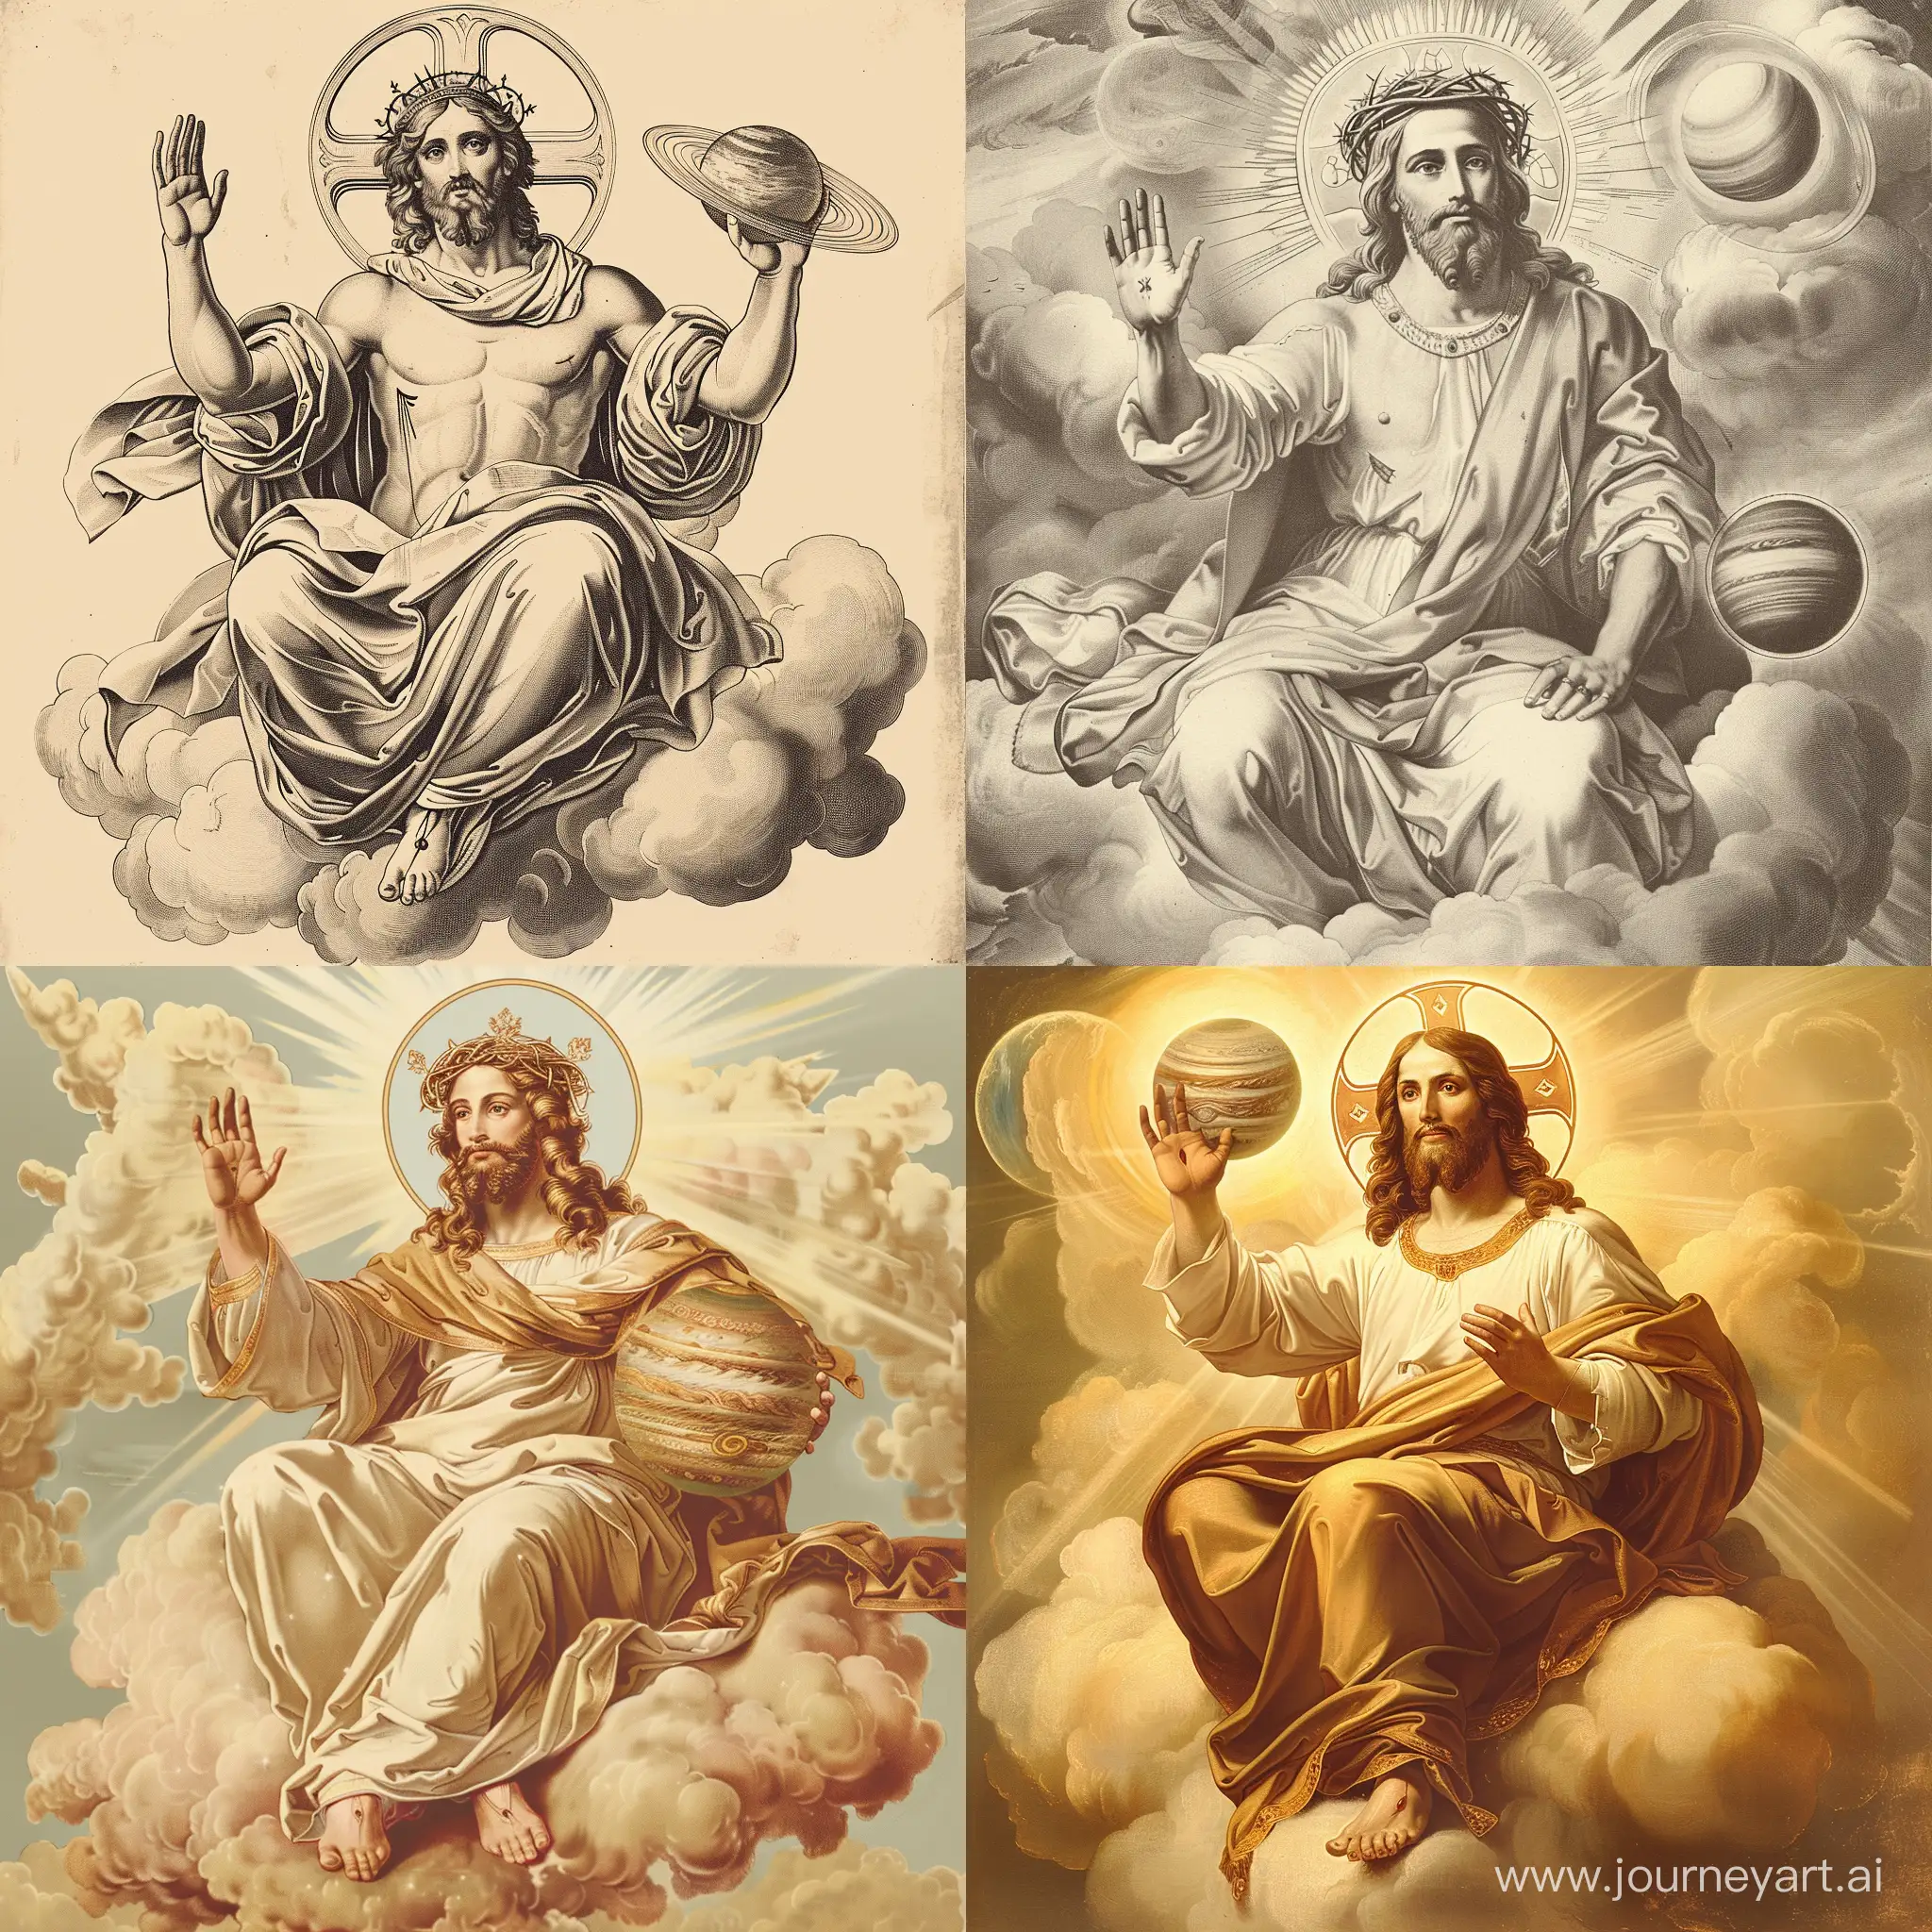 Rey dios padre, parecido a Jesus, vistiendo túnica, sentado sobre nubes y resplandores sostiene un planeta con su mano derecha frente a su pecho, saludando con la mano izquierda